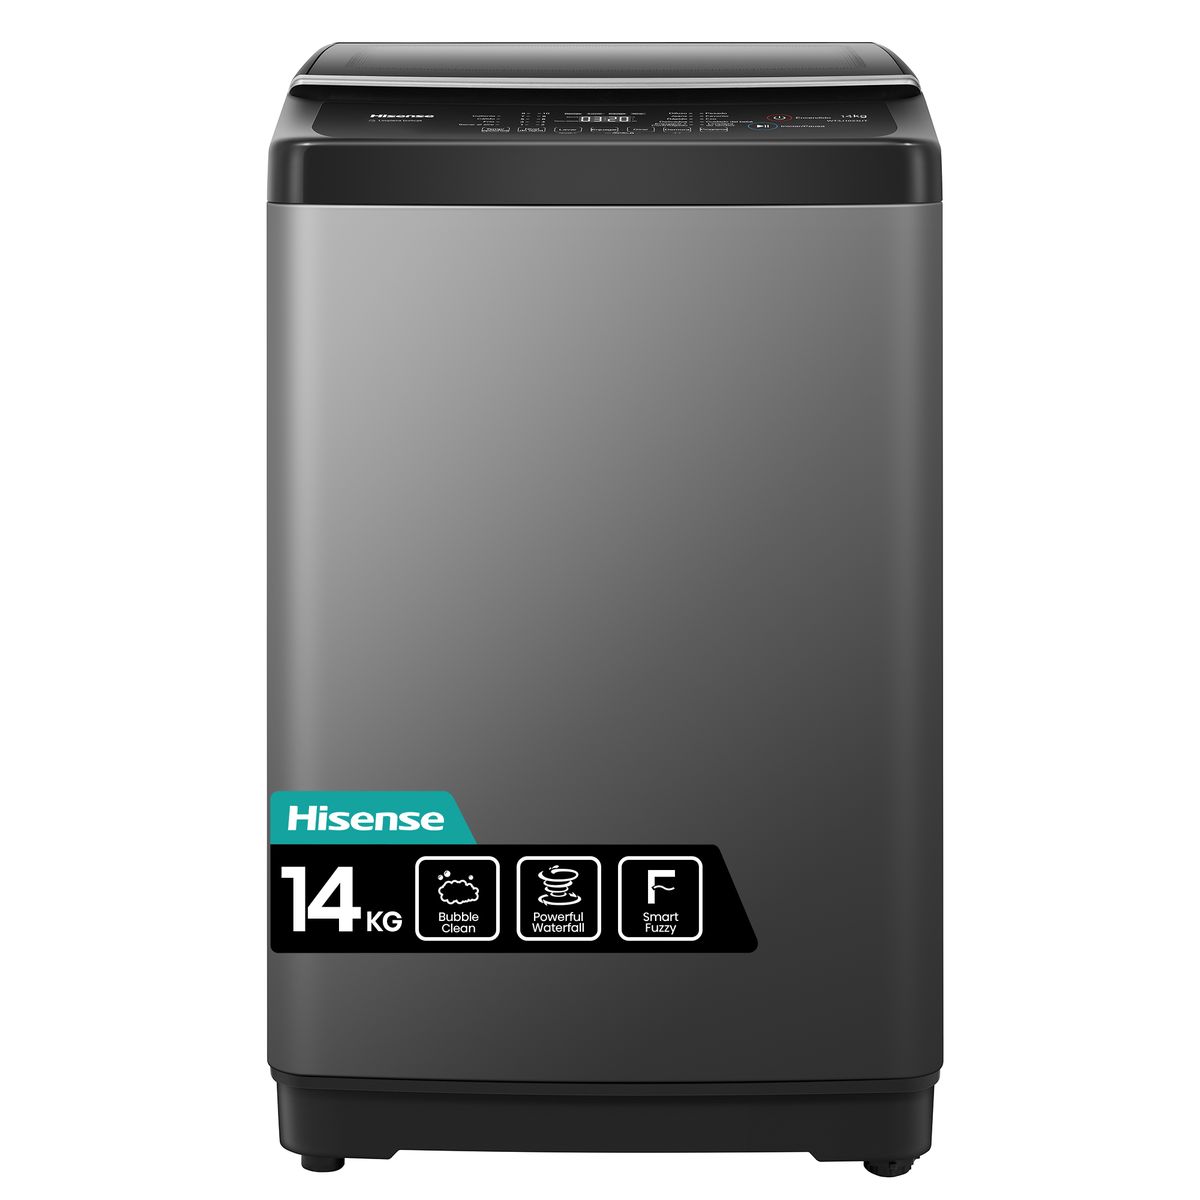 Hisense 14Kg Top Loader Washing Machine with LED Display-Titanium Grey